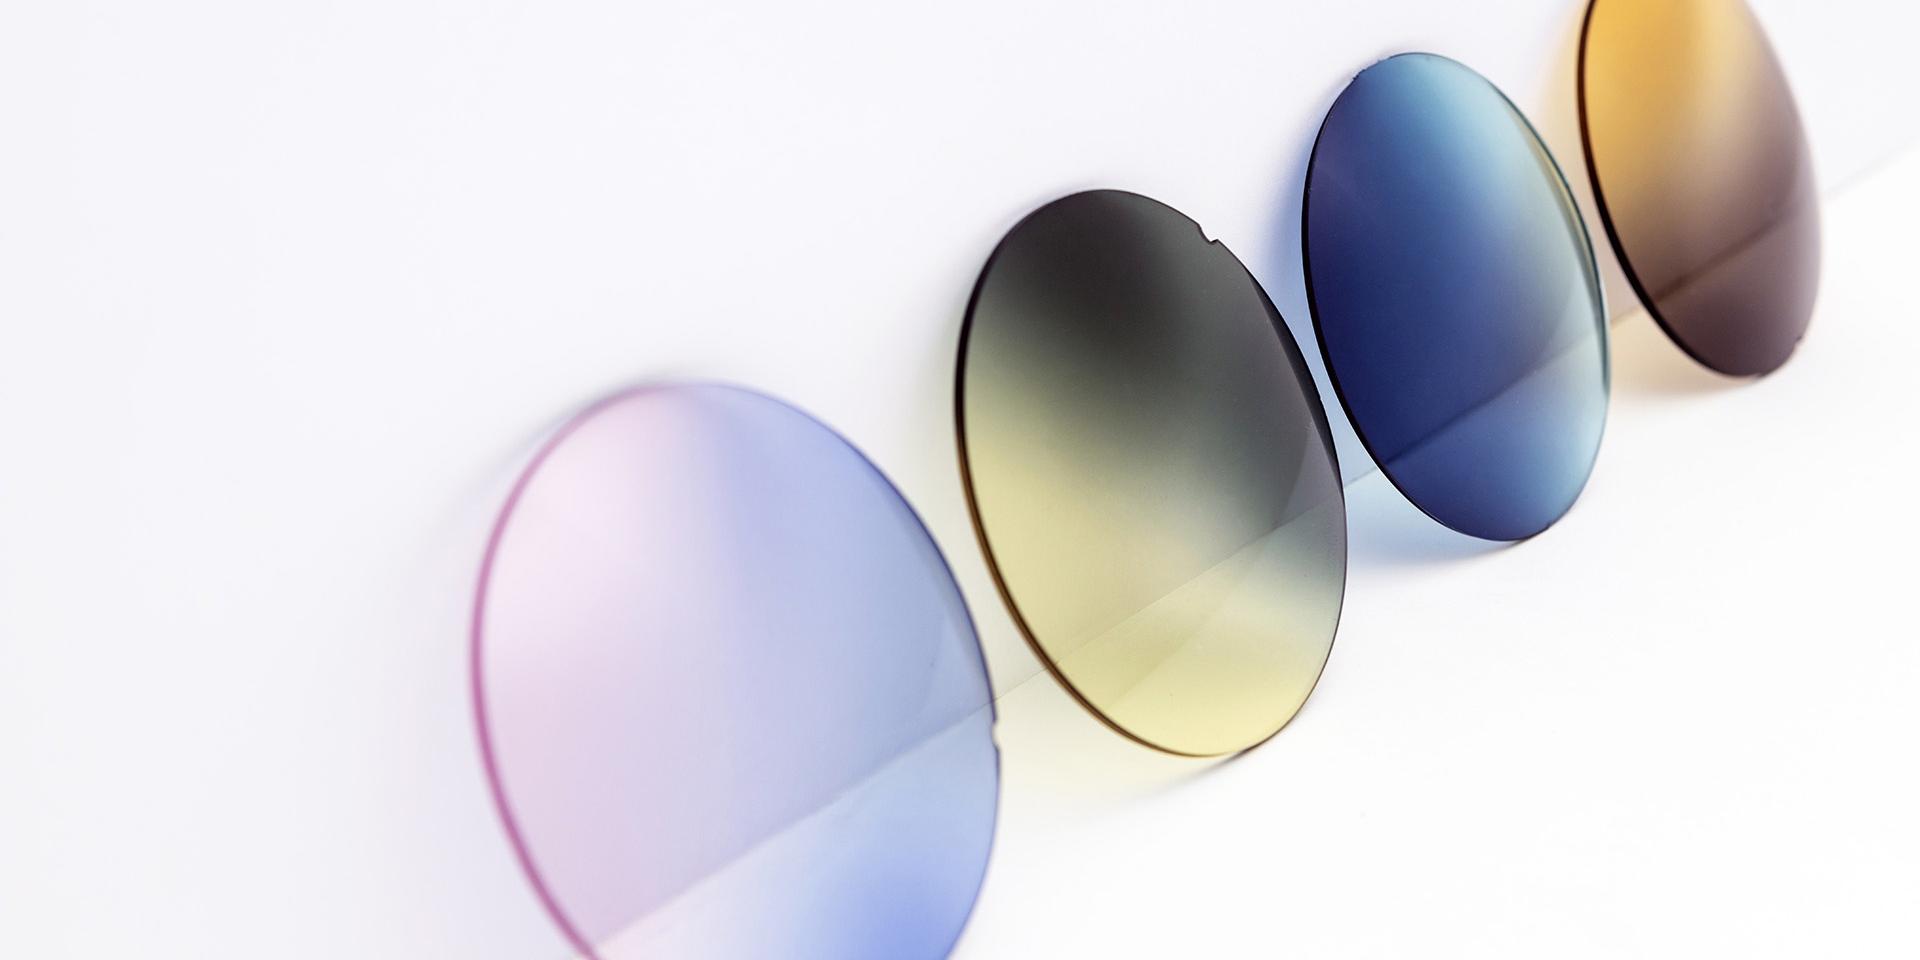 Forskelligt farvede solbriller der læner sig op ad en hvid overflade: pink-violette, gule-grå, blå og brune overgange.